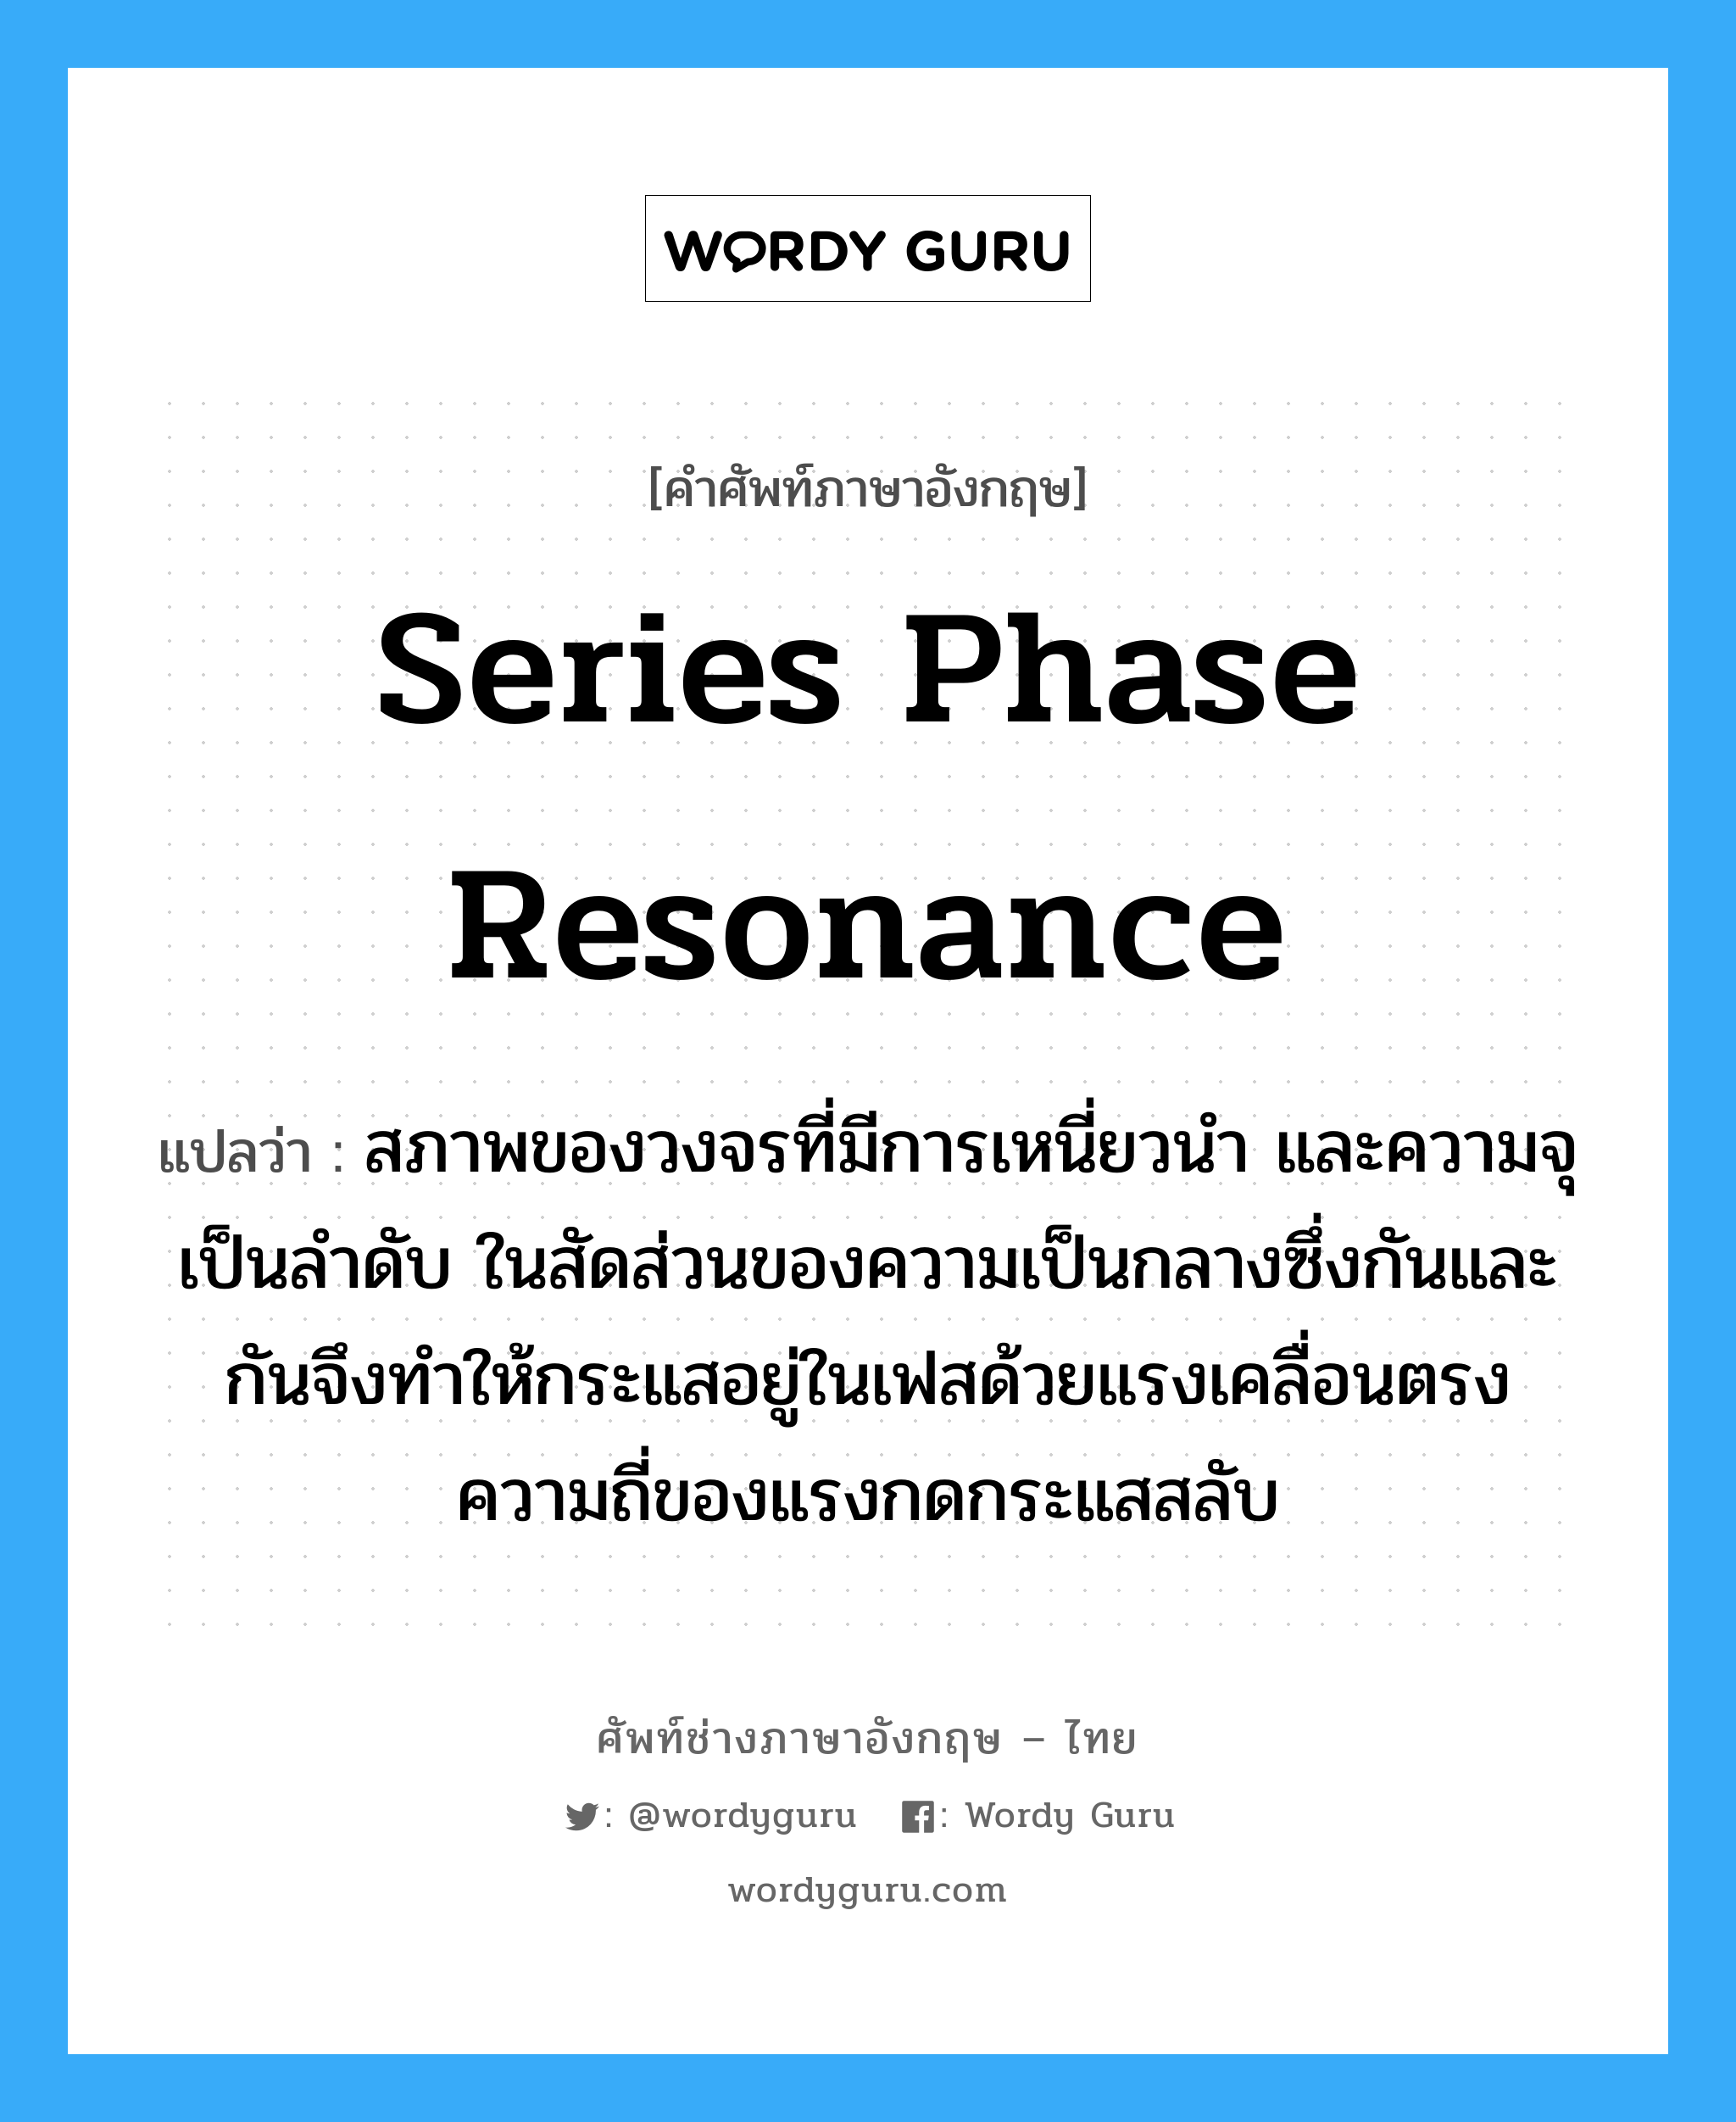 series phase resonance แปลว่า?, คำศัพท์ช่างภาษาอังกฤษ - ไทย series phase resonance คำศัพท์ภาษาอังกฤษ series phase resonance แปลว่า สภาพของวงจรที่มีการเหนี่ยวนำ และความจุเป็นลำดับ ในสัดส่วนของความเป็นกลางซึ่งกันและกันจึงทำให้กระแสอยู่ในเฟสด้วยแรงเคลื่อนตรงความถี่ของแรงกดกระแสสลับ